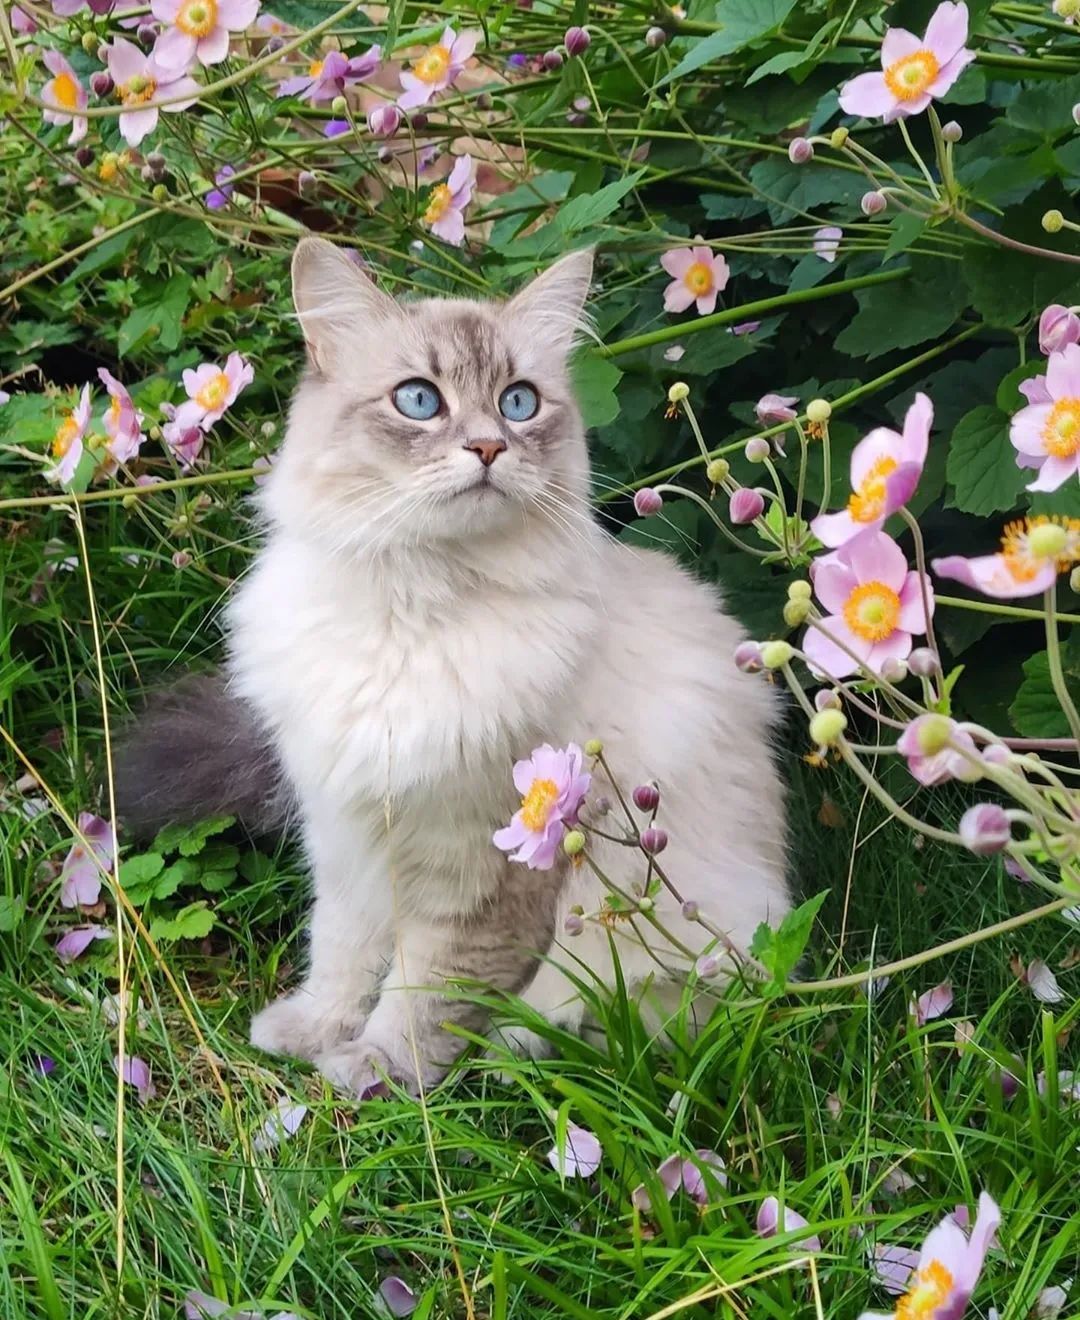 对猫有毒的5种植物 第一种号称 猫中砒霜 撸猫教授 二十次幂